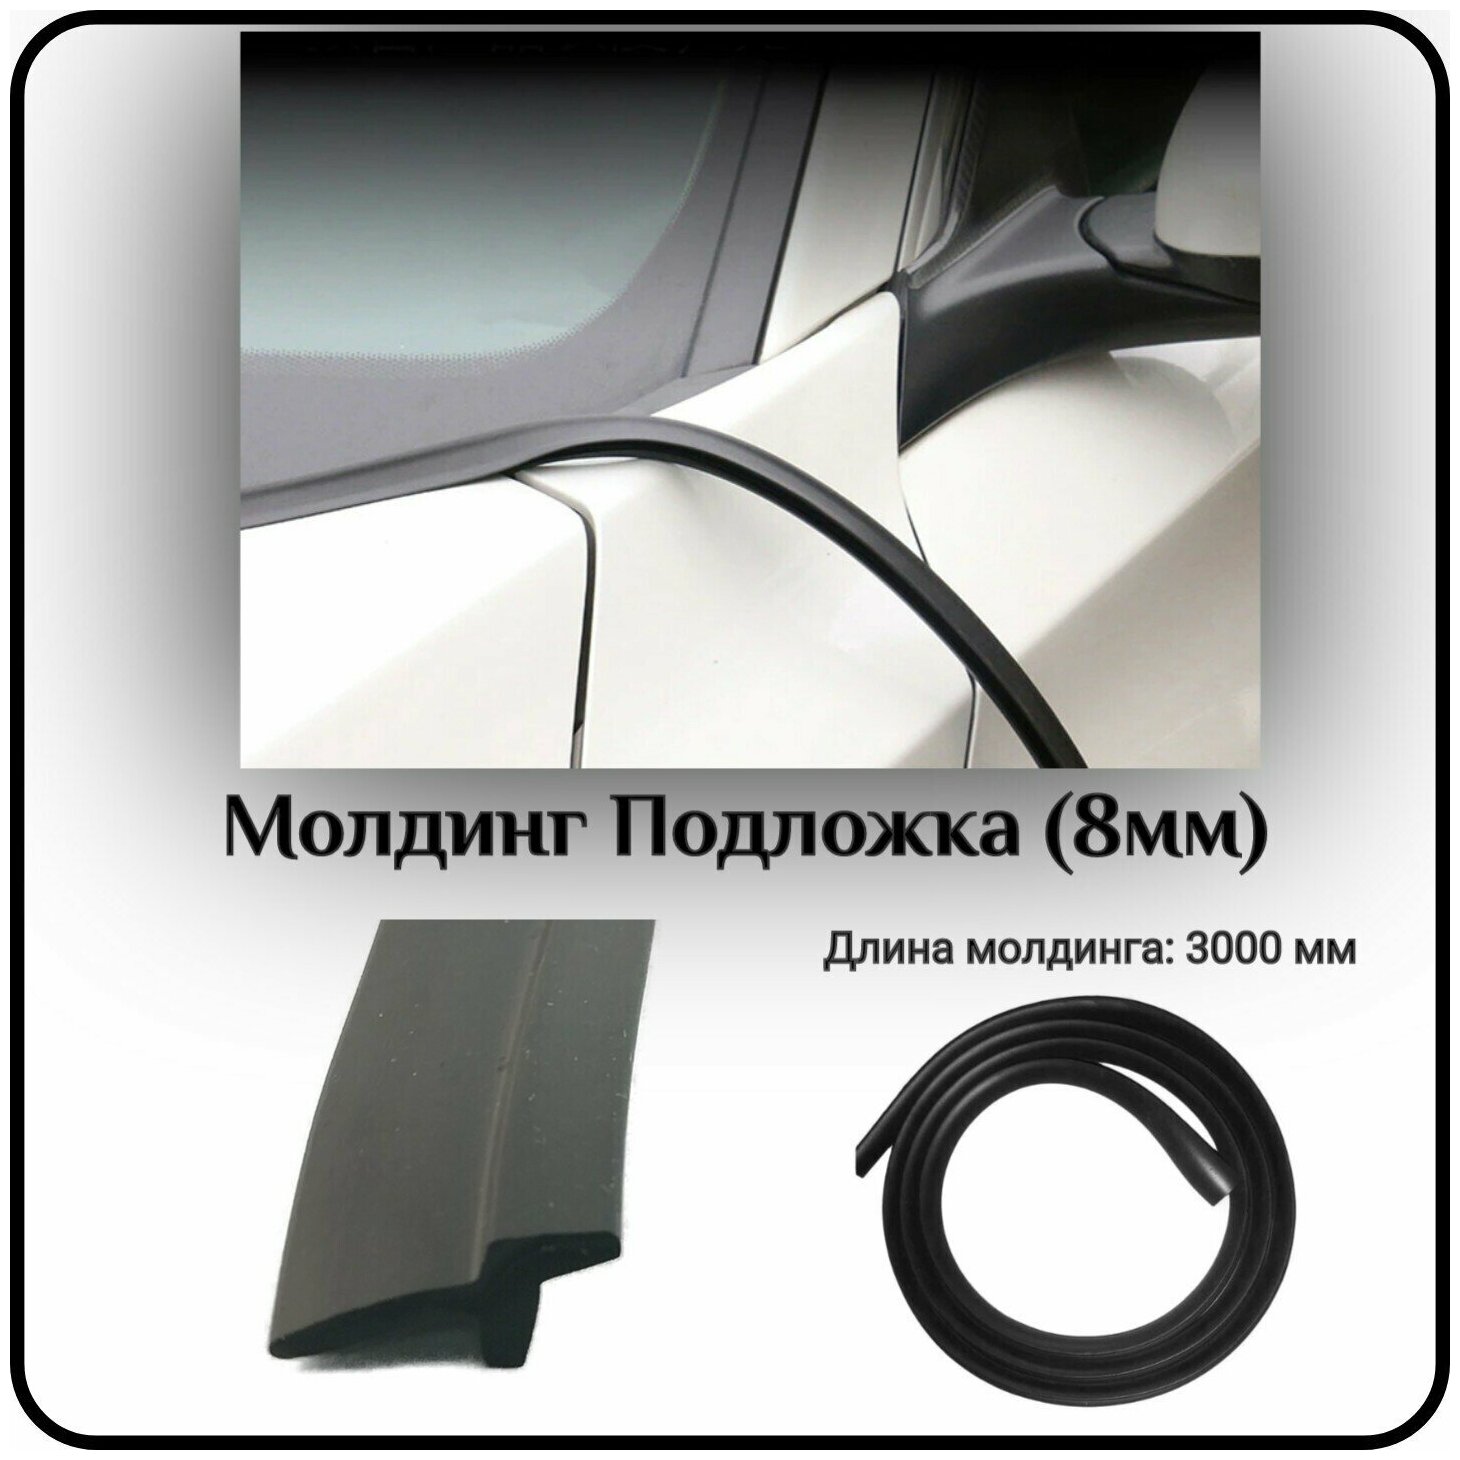 Уплотнитель кромки лобового стекла/молдинг для автомобиля L - 3000 мм Подложка (8мм) ( без скотча )